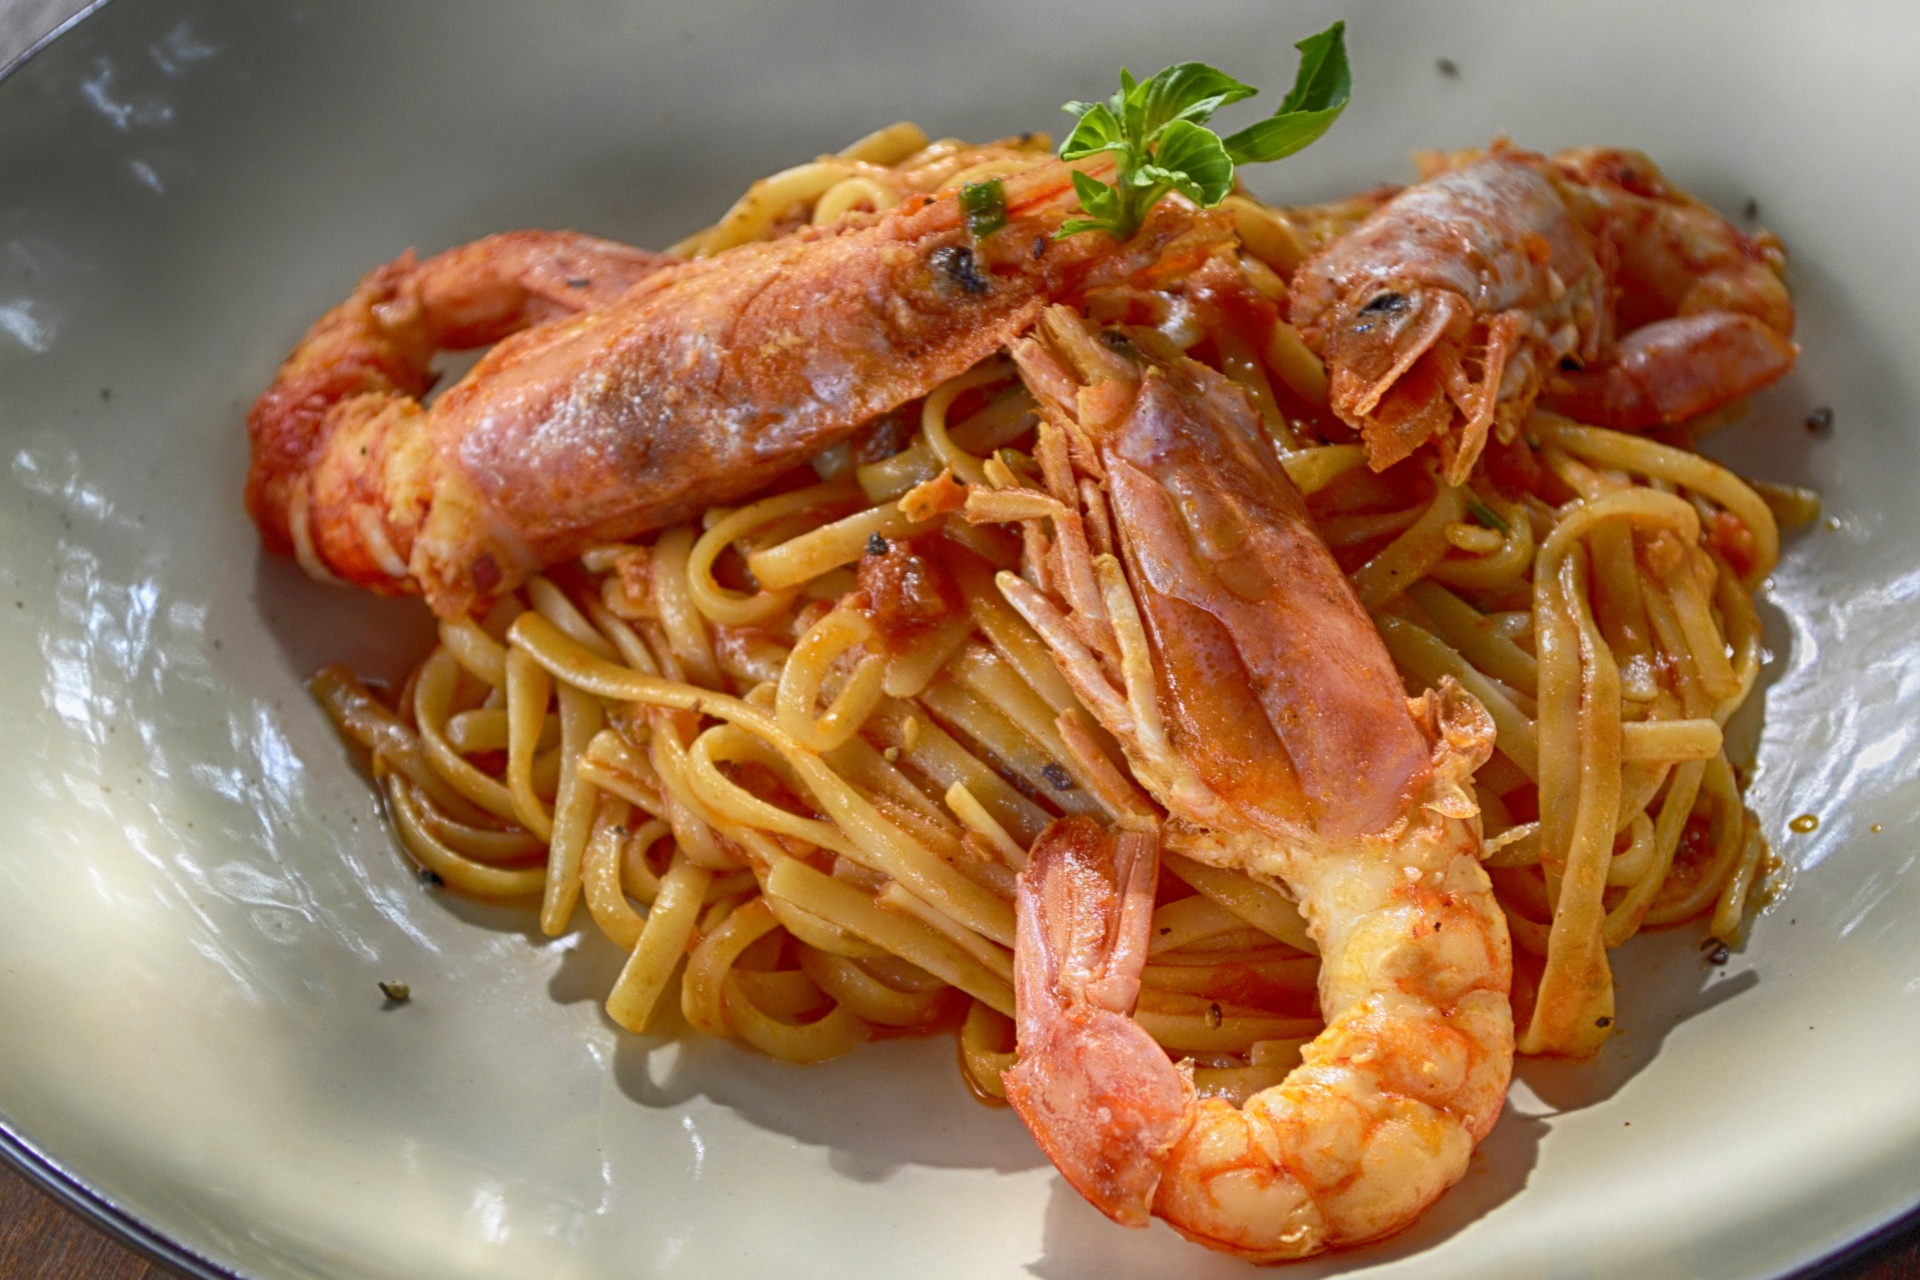 Garlic Shrimp and Pasta (Low fat recipe)